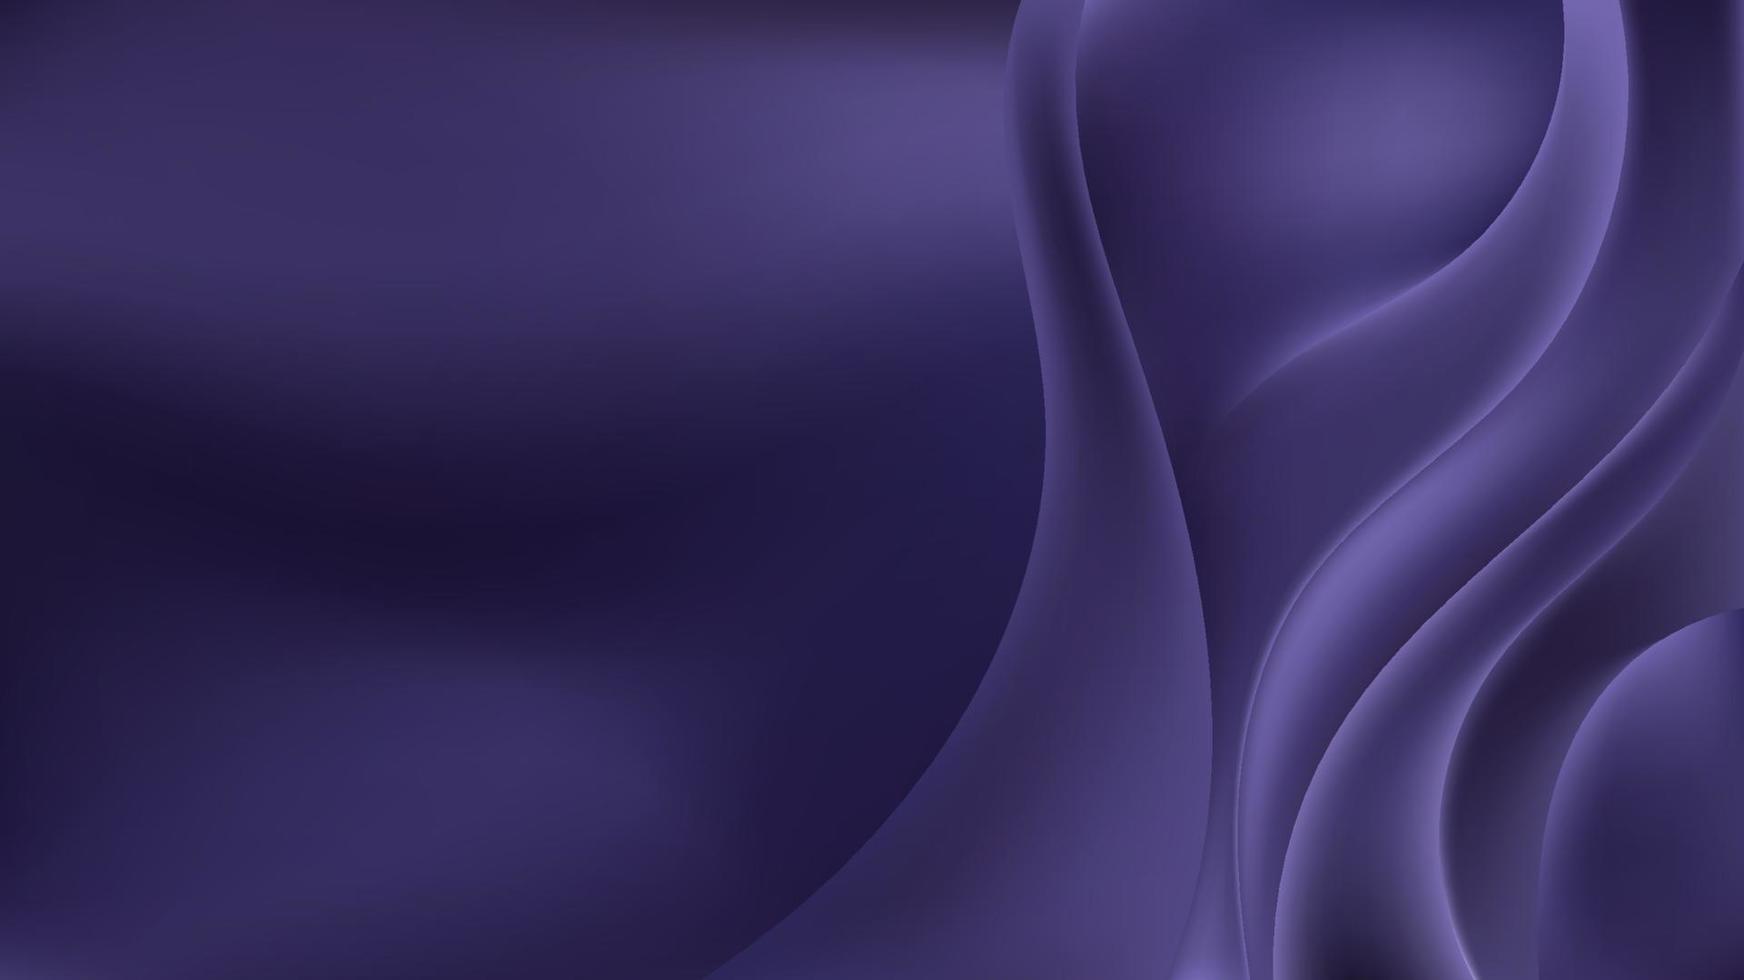 fundo e textura de cetim de tecido roxo de luxo abstrato ou superfície de onda de liquis violeta vetor